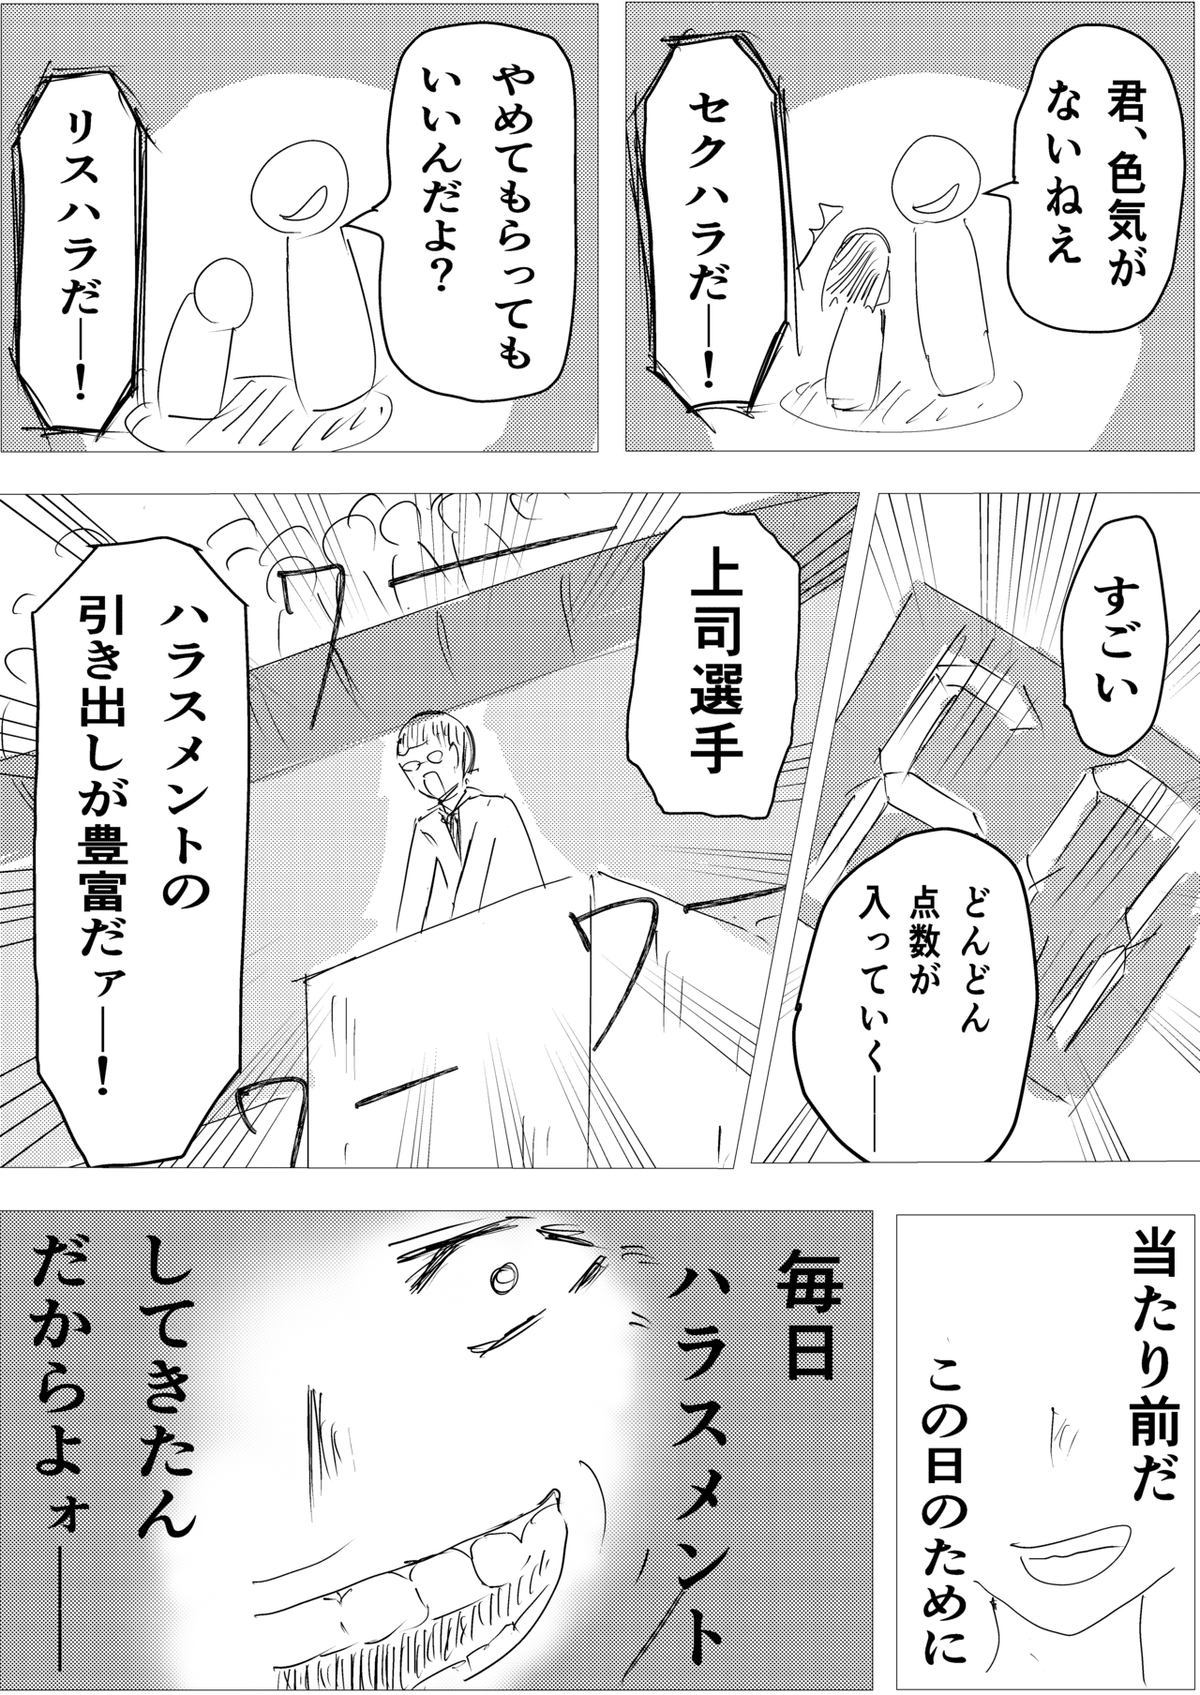 コミック10_出力_031